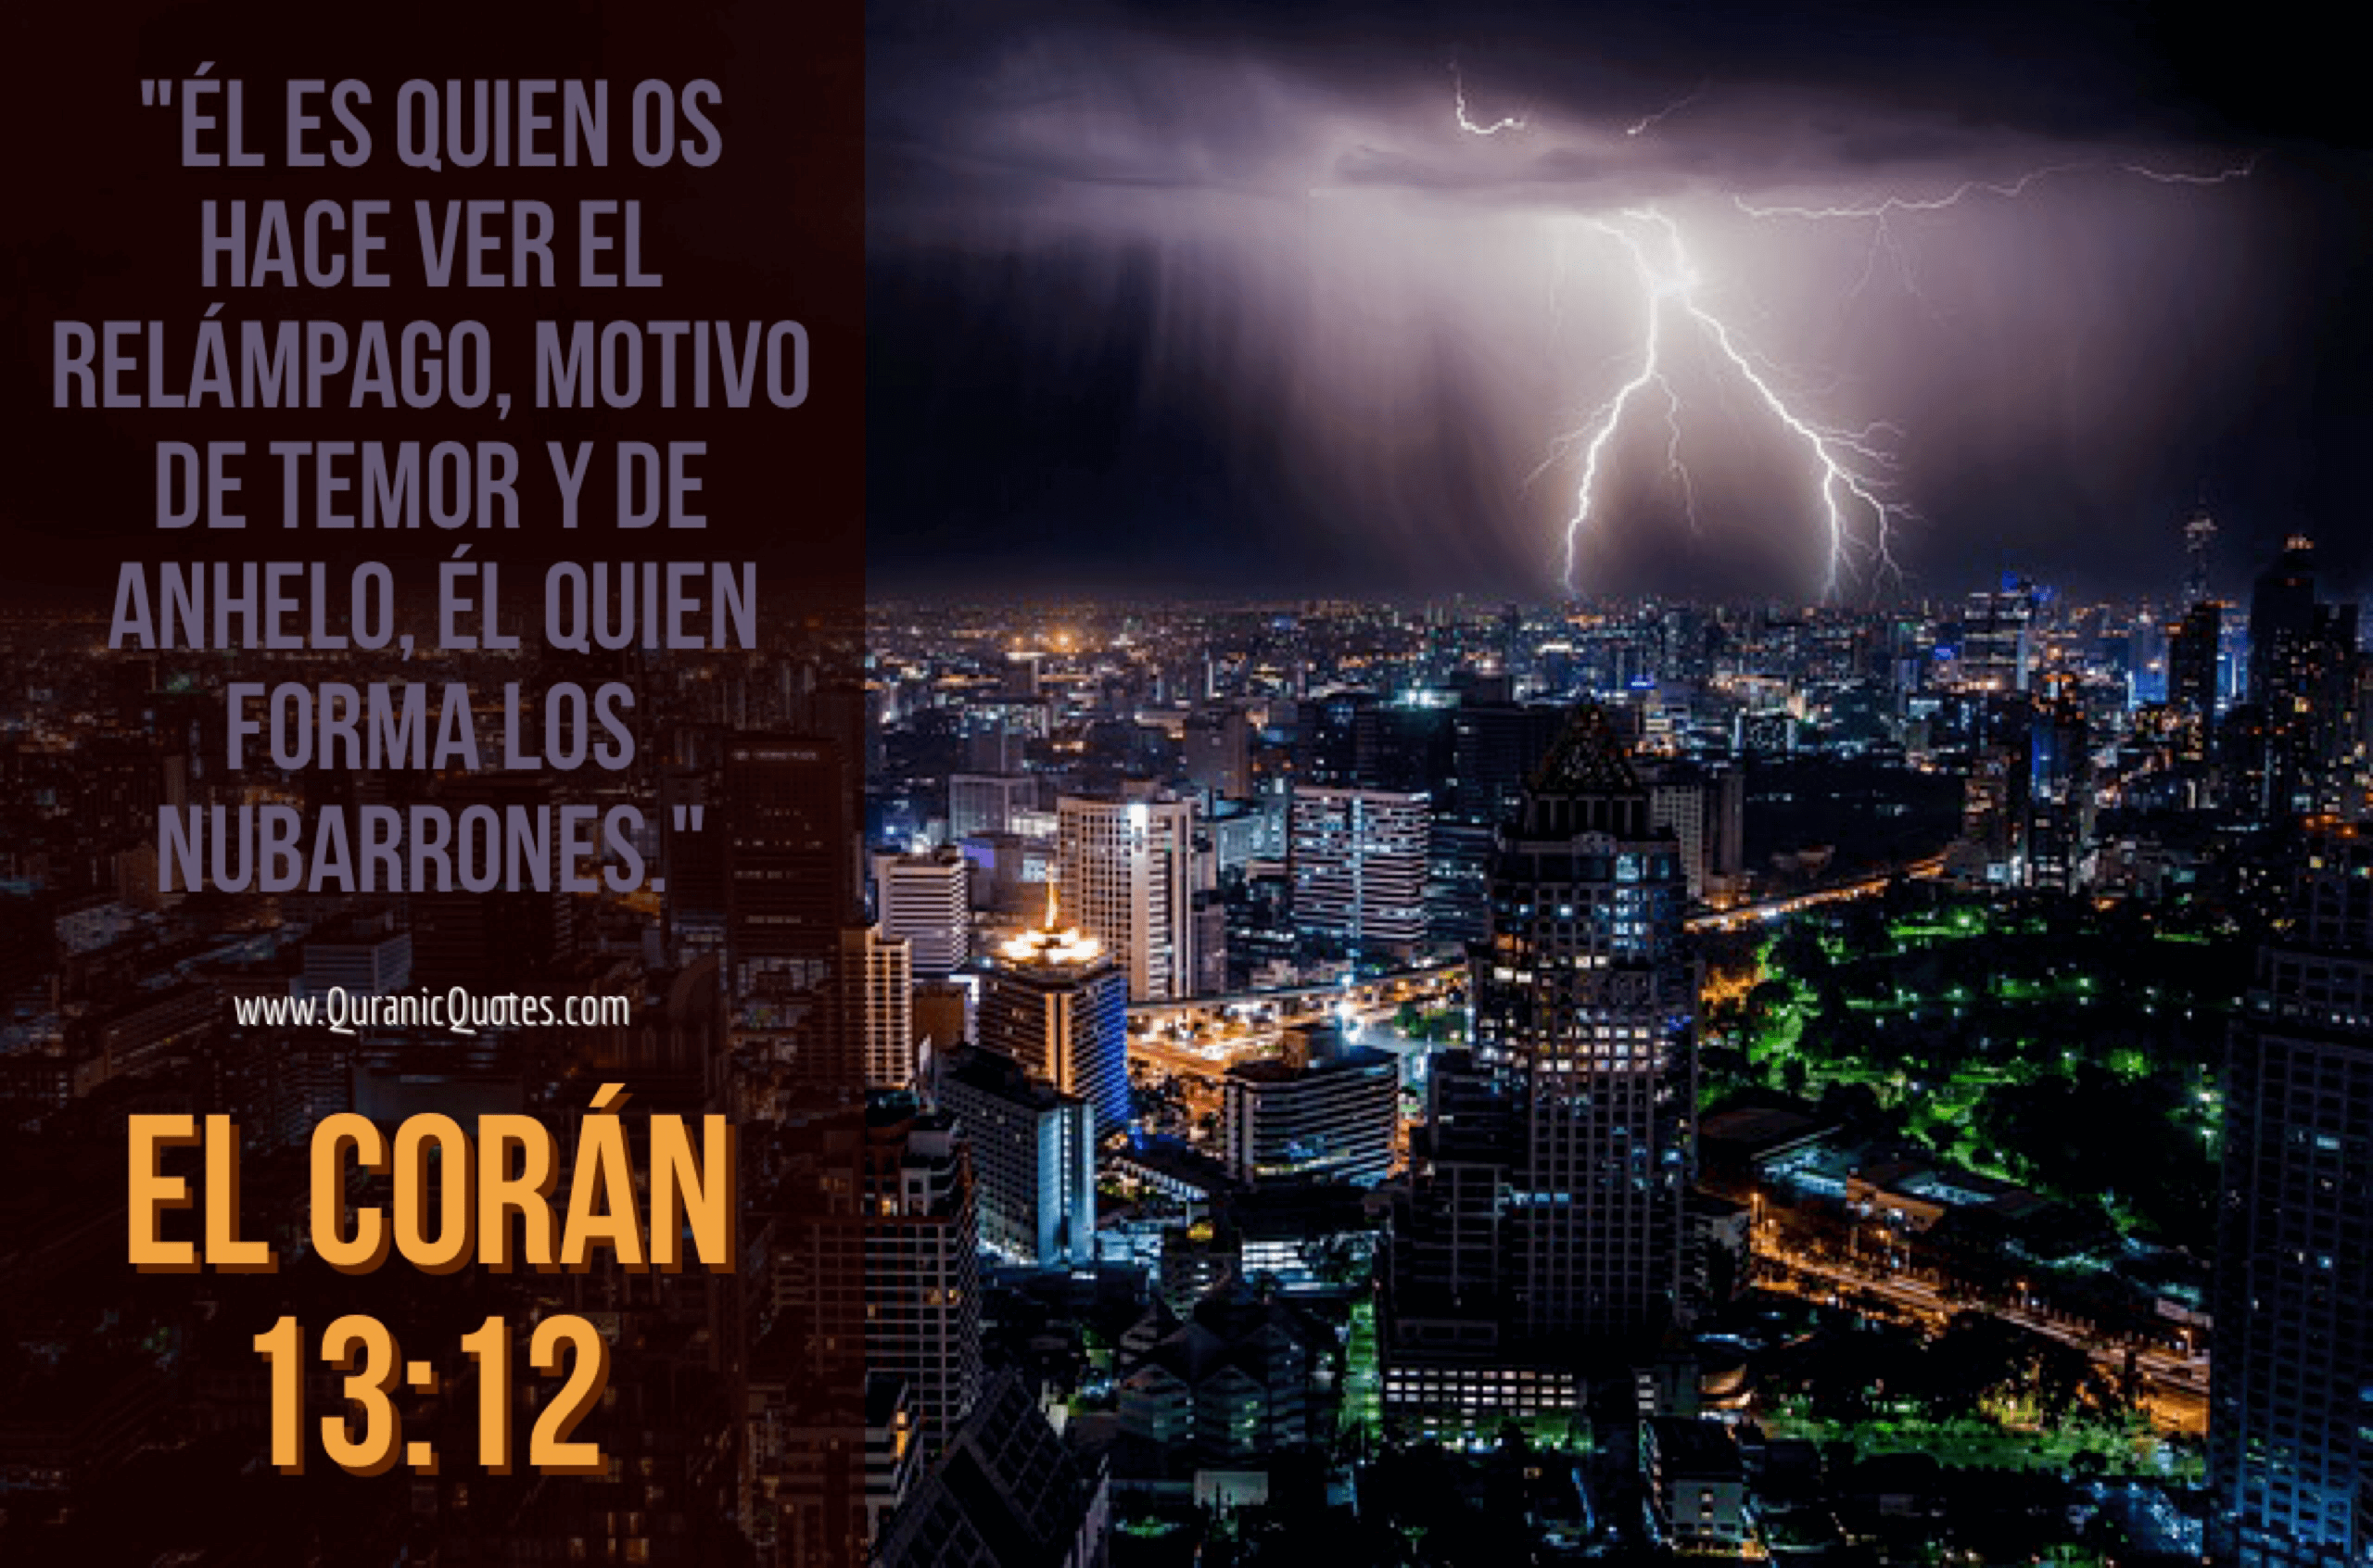 Quranic Quotes Español #136